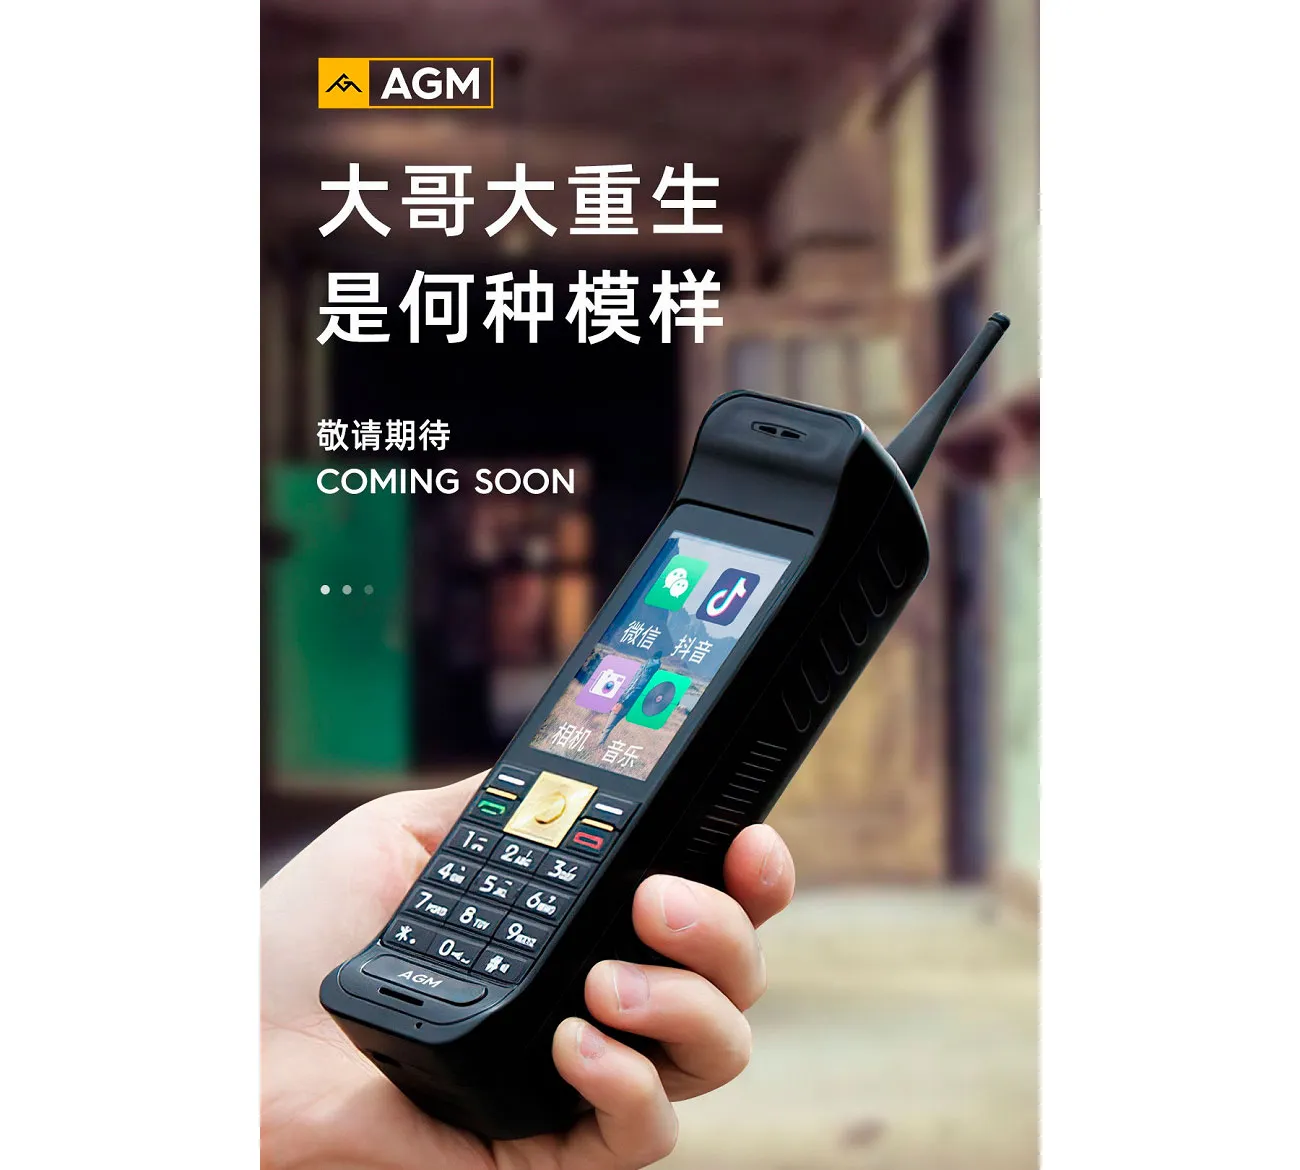 AGM анонсировала телефон-кирпич в стиле Motorola DynaTAC